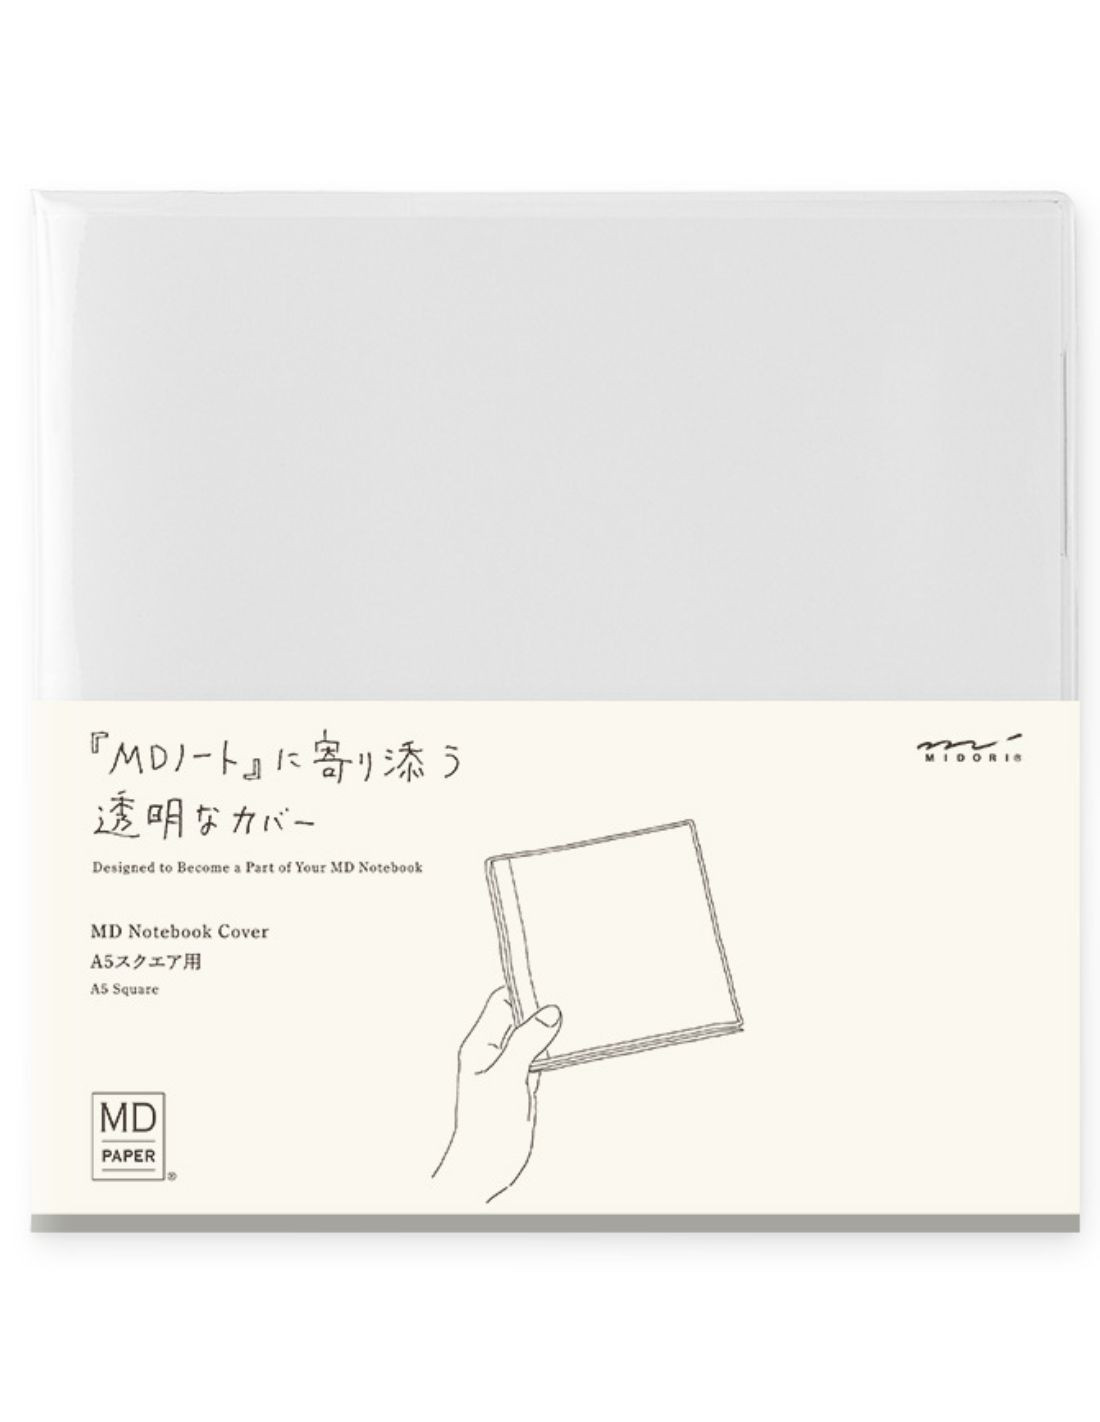 Couverture pour carnet MD Paper - A5 Carré - PVC - Midori|Papeterie Makkura